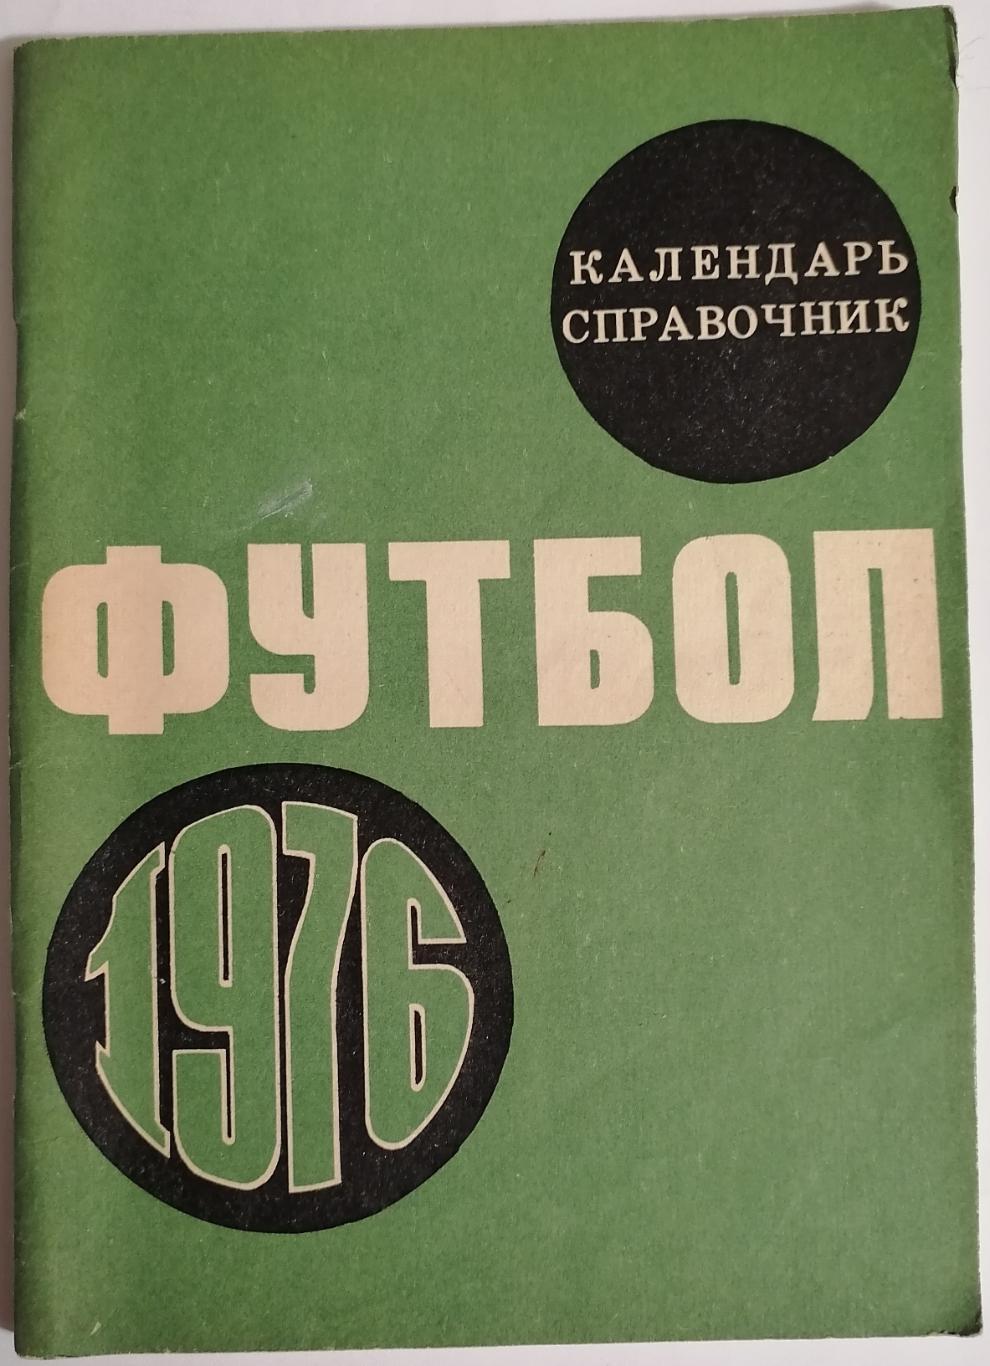 ЛУЖНИКИ МОСКВА 1976 календарь-справочник